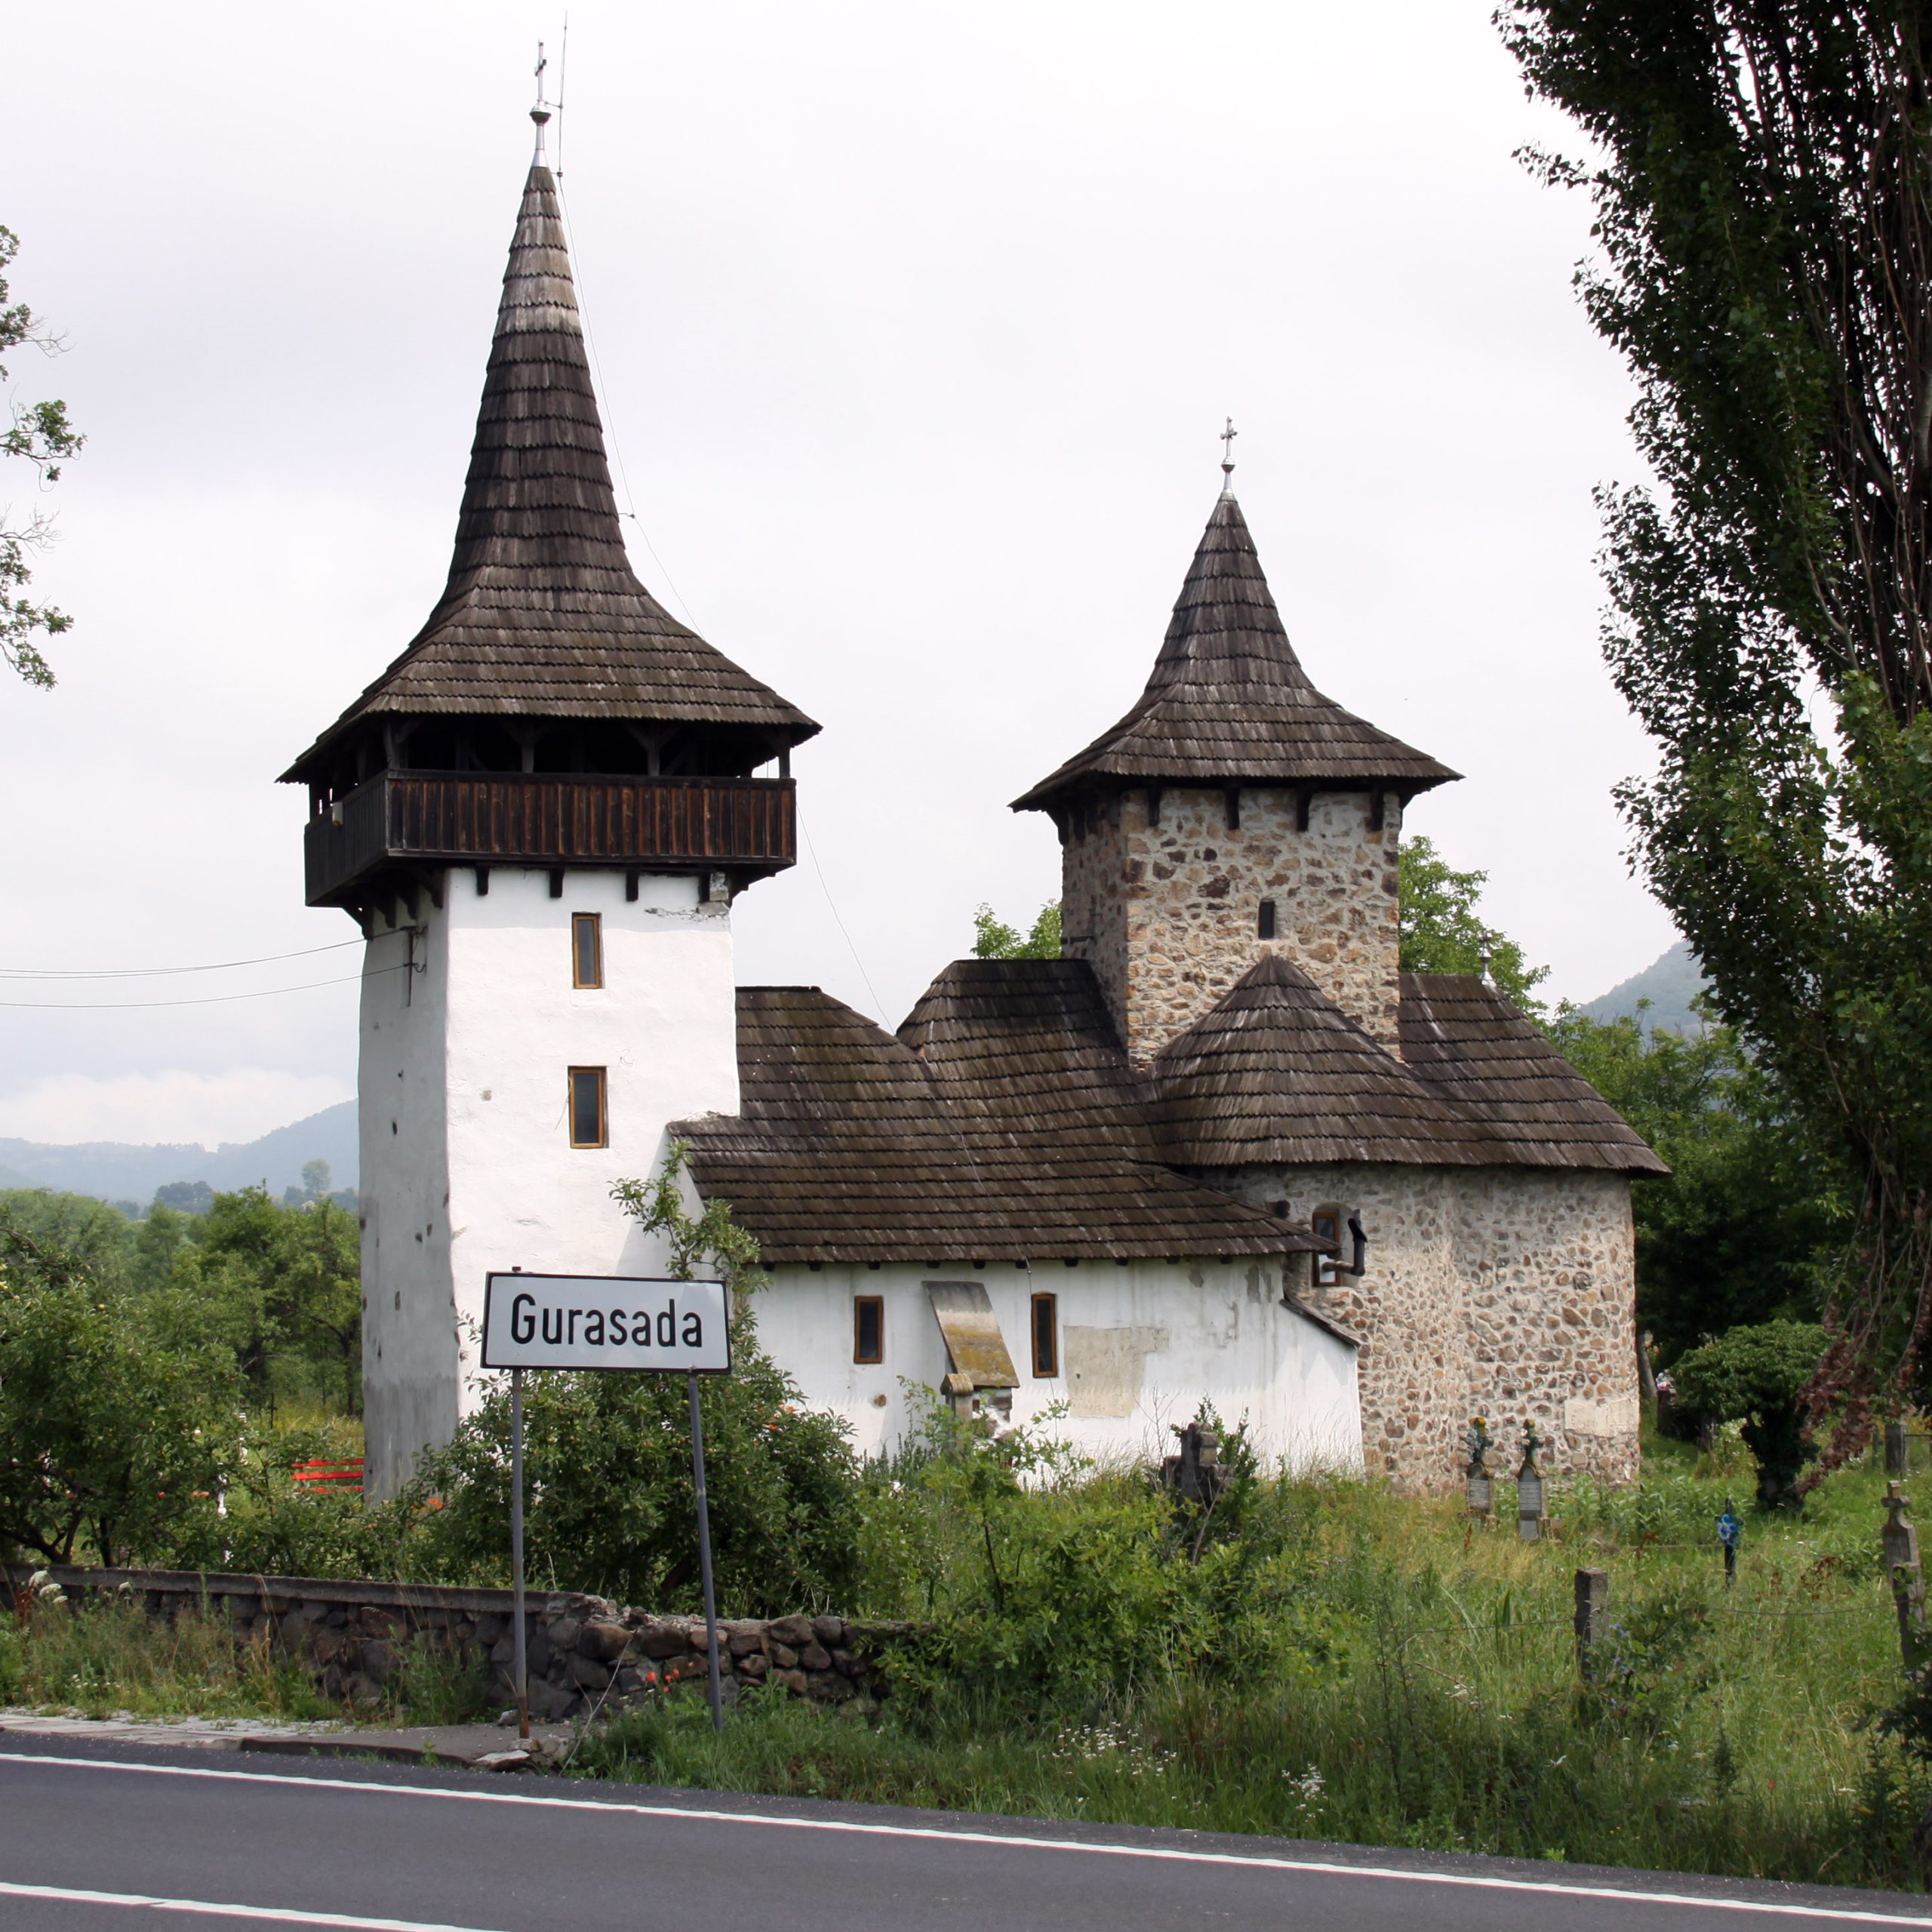 Descoperă pitorescul sat Gurasada, un colț autentic de liniște și frumusețe rurală în inima Transilvaniei